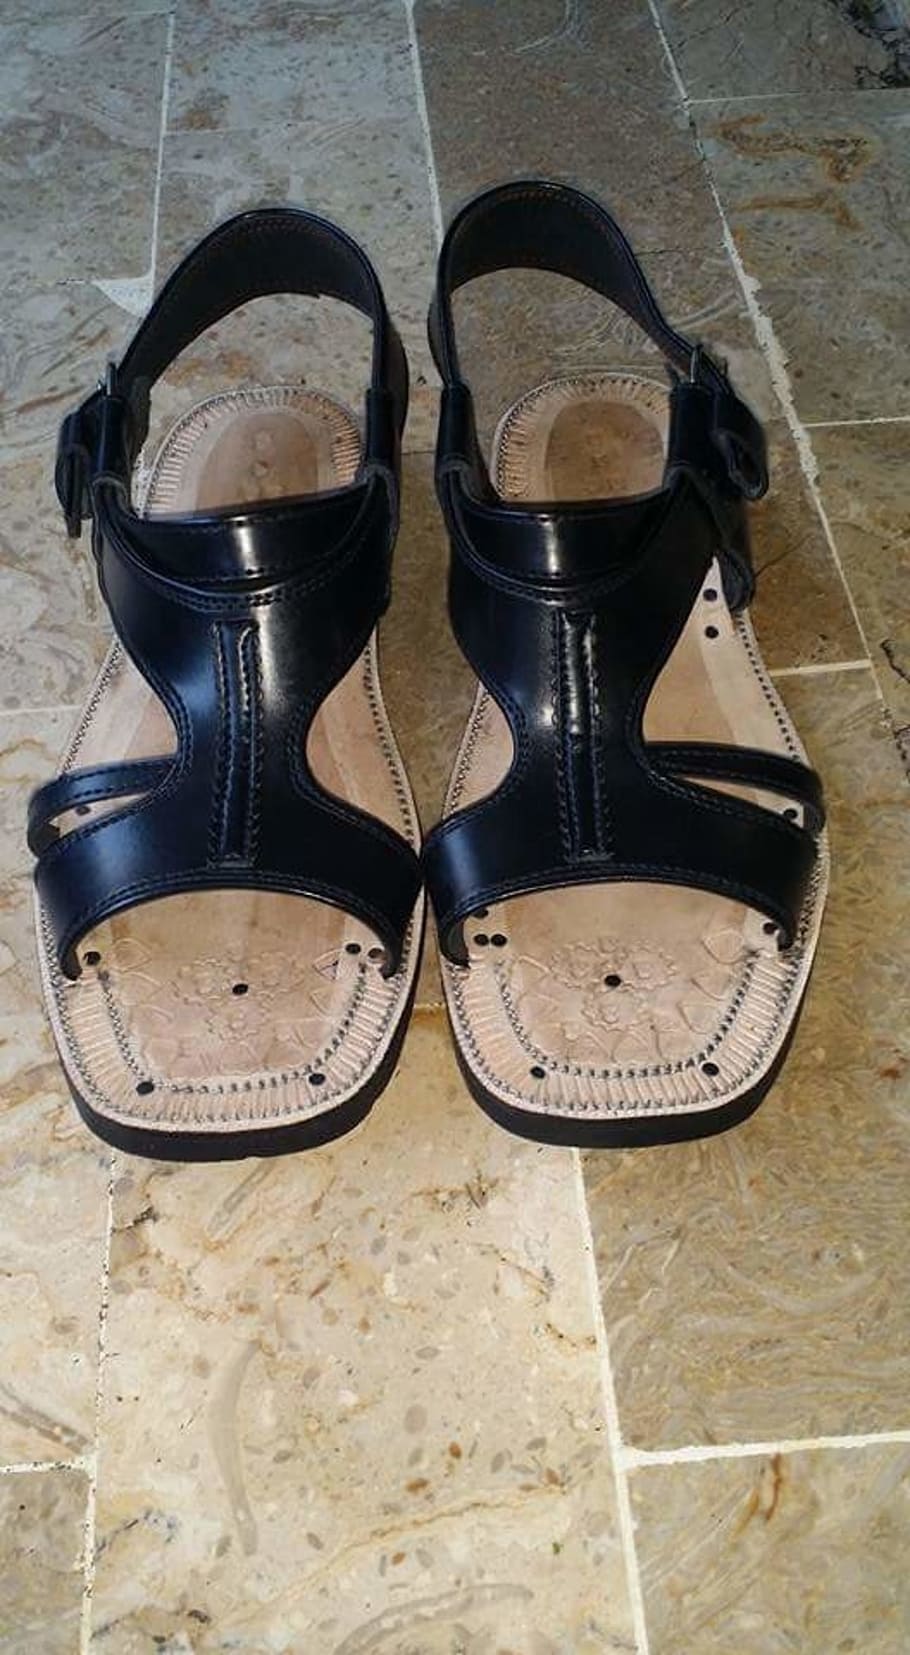 sandalias, negro, cuero, zapatos, calzado, zapato, par, bodegón, interiores, dos objetos